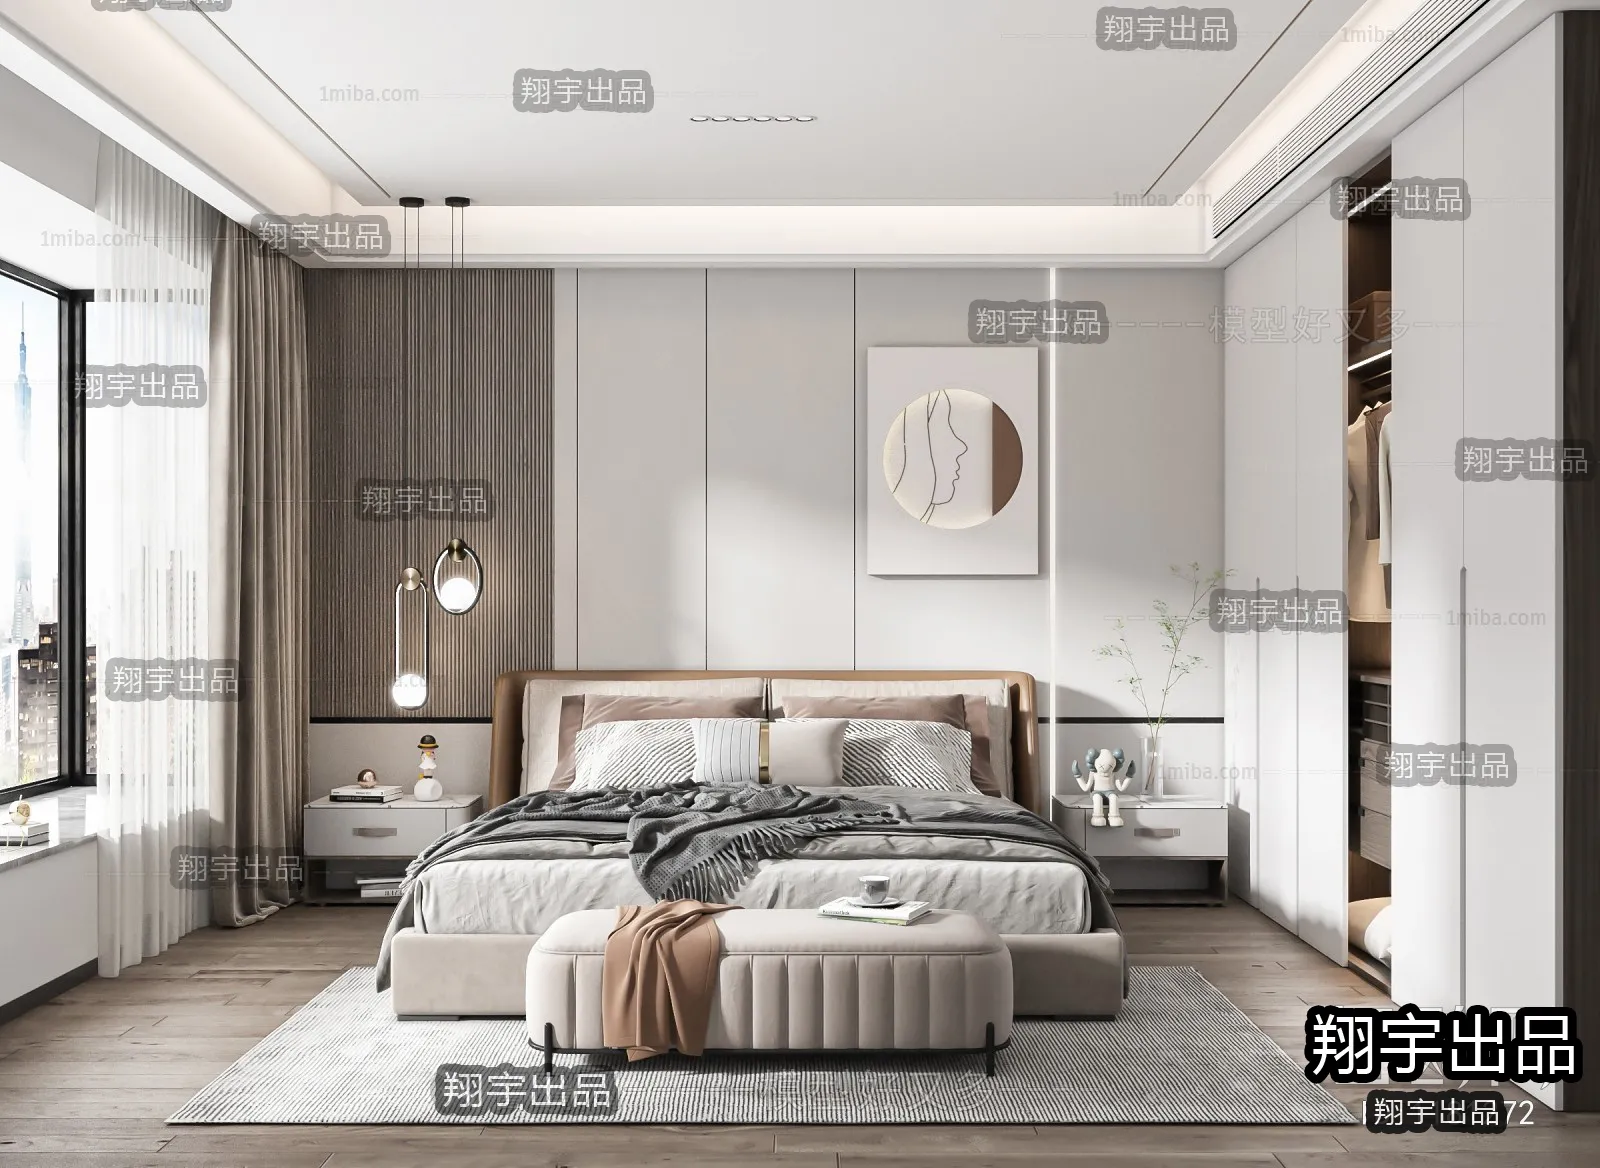 Bedroom – Modern Interior Design – 3D Models – 046